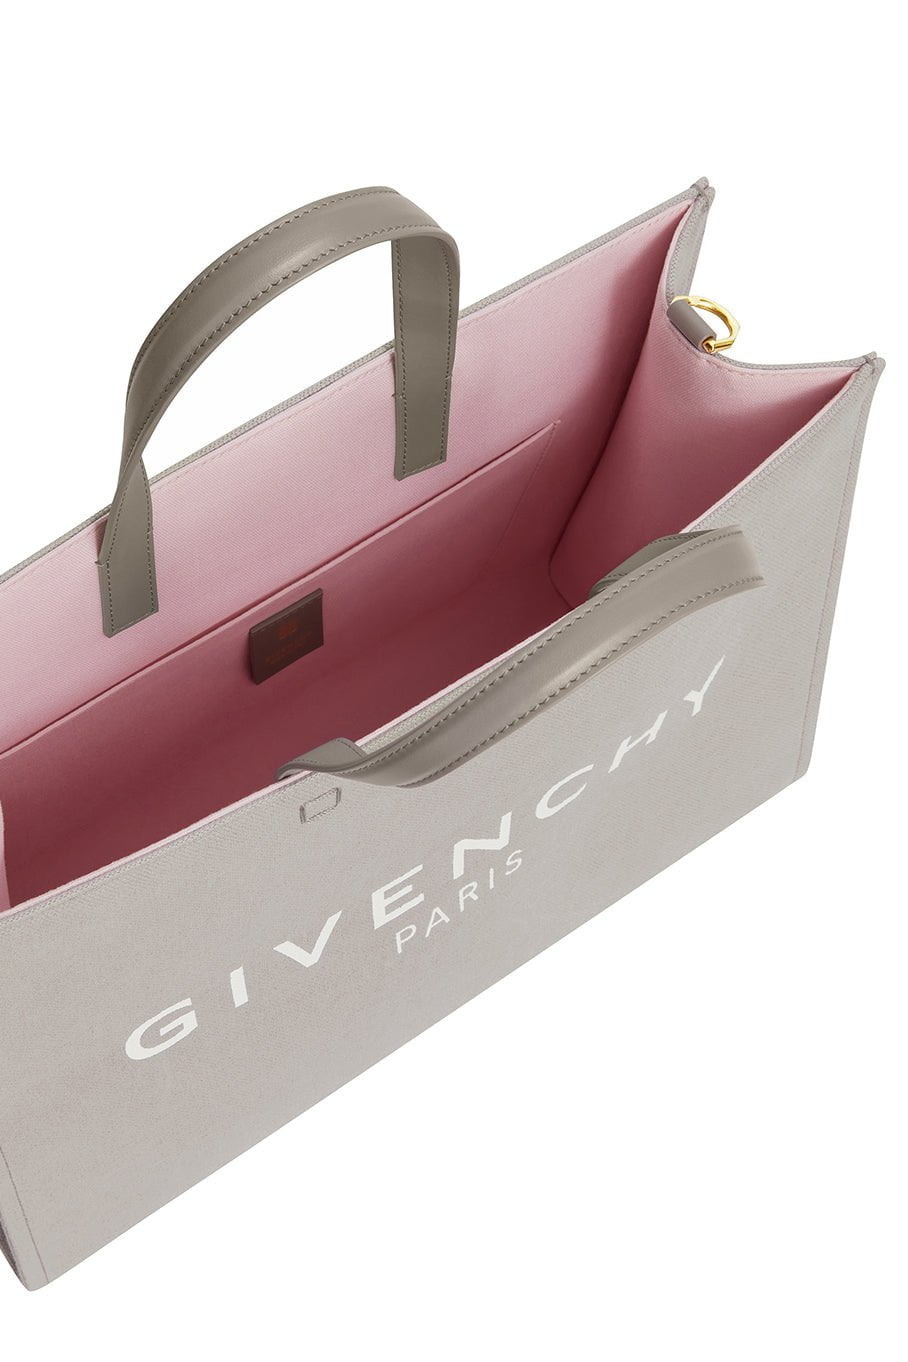 Givenchy Medium Tote Bag in Grey